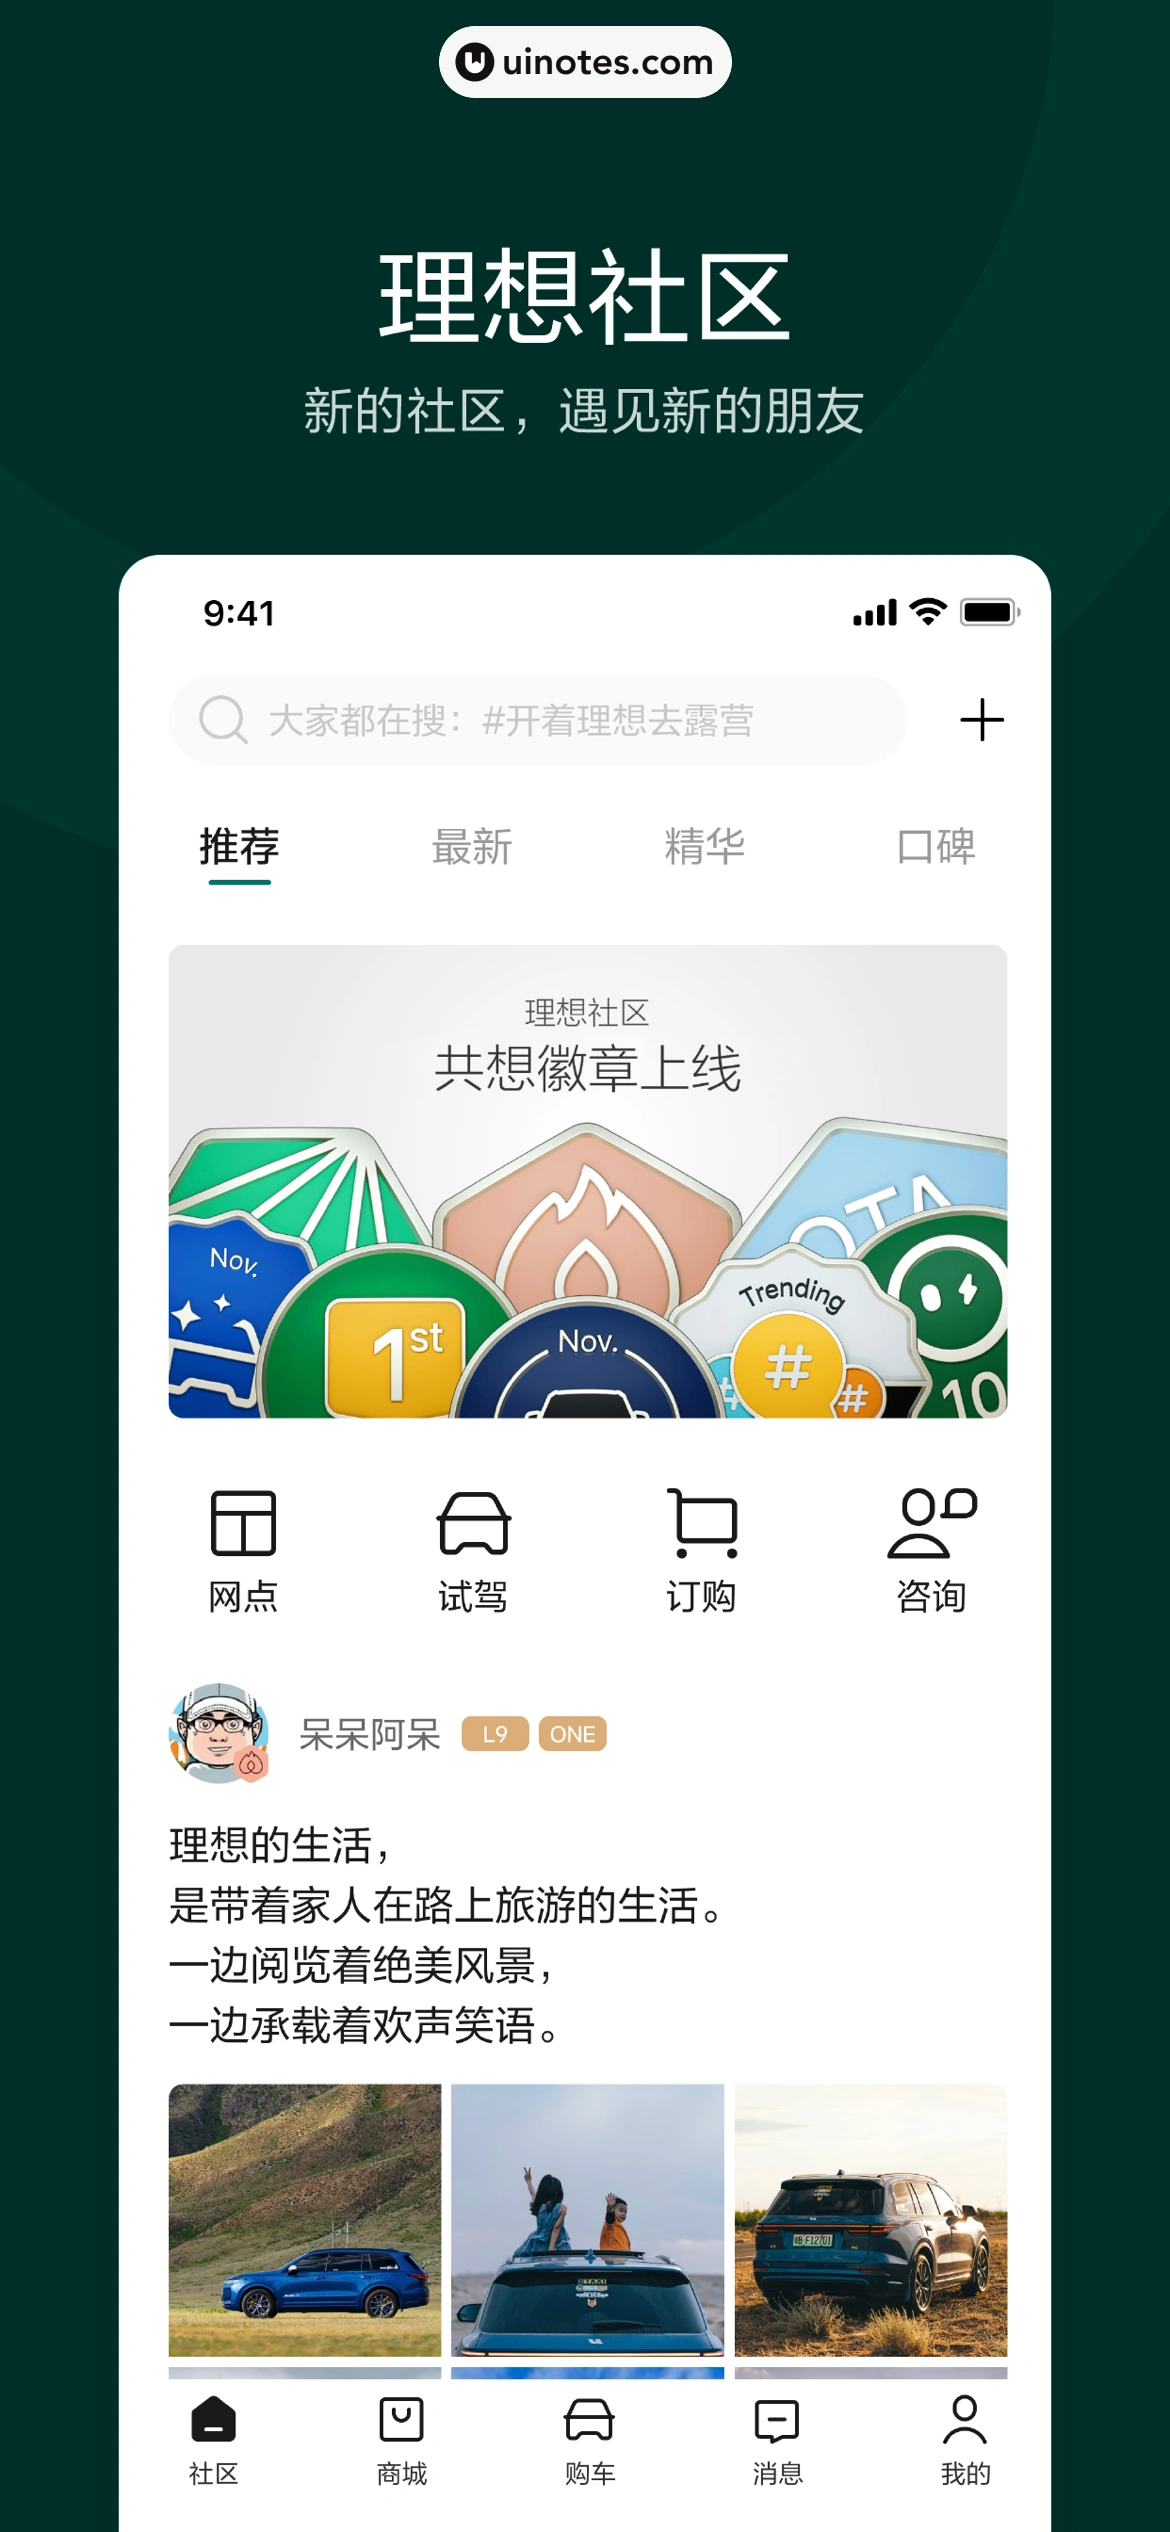 理想汽车 App 截图 002 - UI Notes